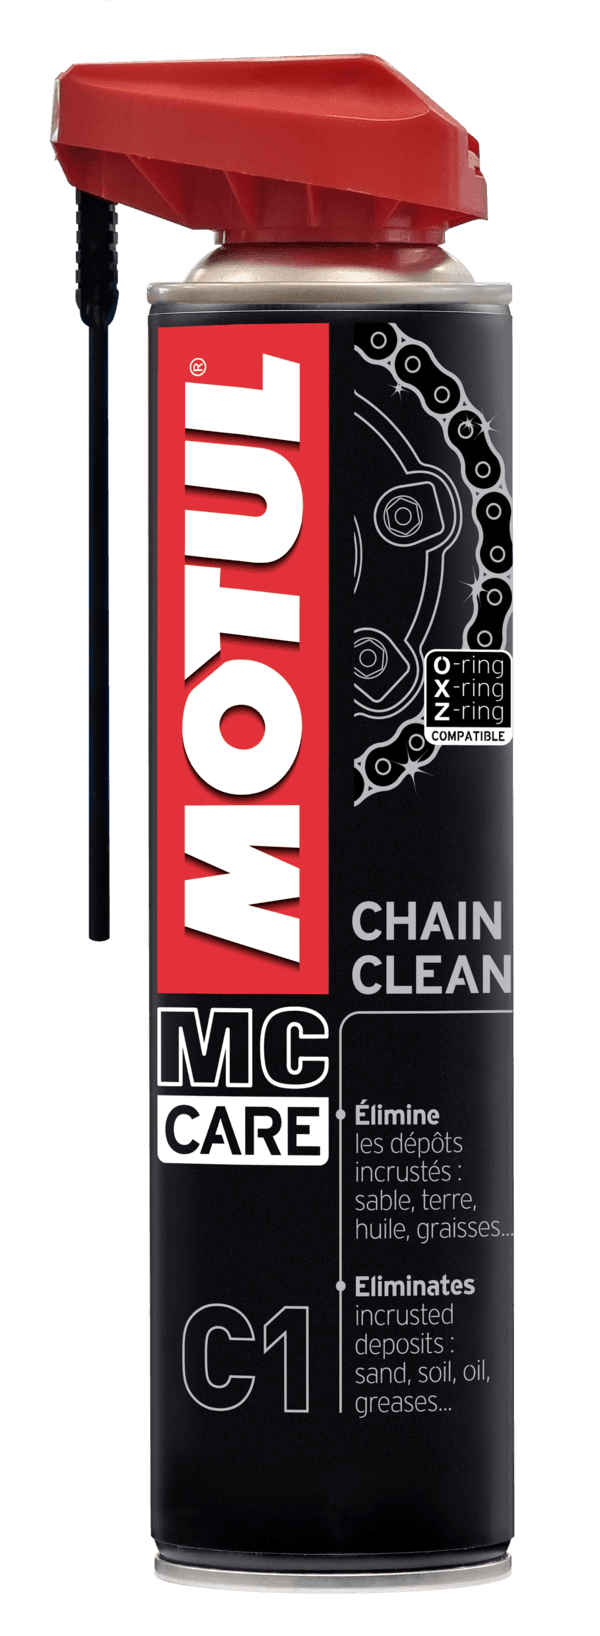 MOTUL MC CARE C1 CHAIN CLEAN